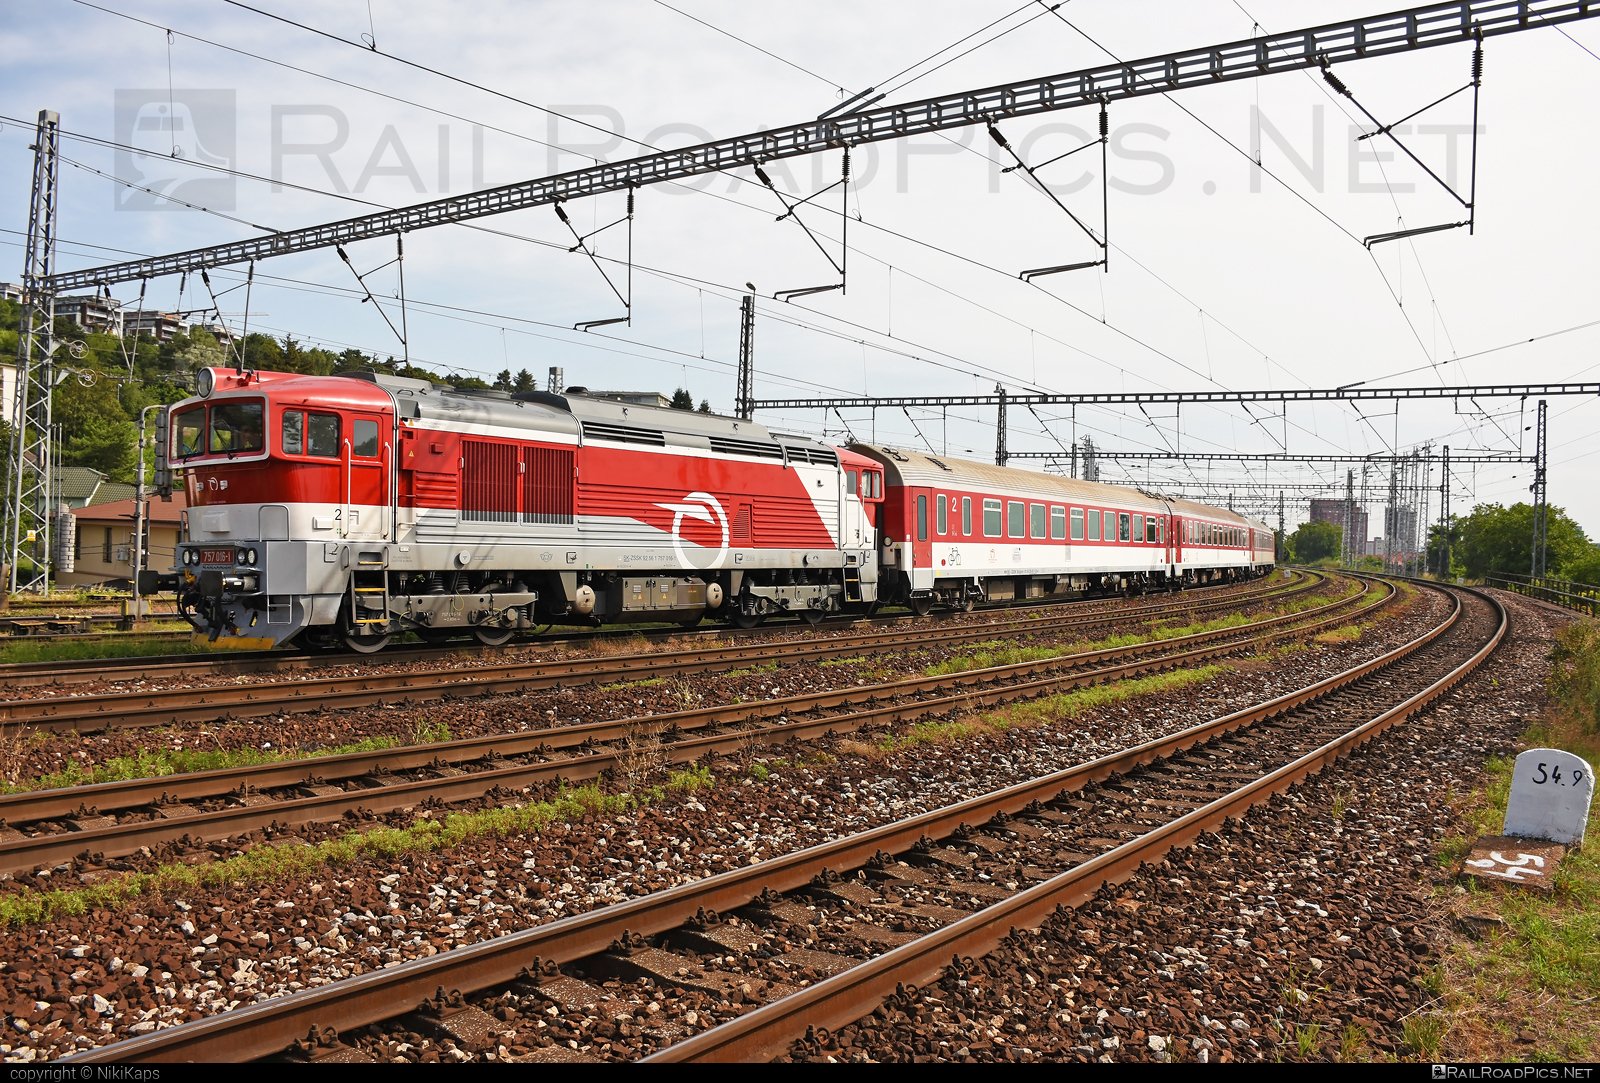 ŽOS Zvolen Class 757 - 757 016-1 operated by Železničná Spoločnost' Slovensko, a.s. #ZeleznicnaSpolocnostSlovensko #brejlovec #locomotiveclass757 #okuliarnik #zoszvolen #zssk